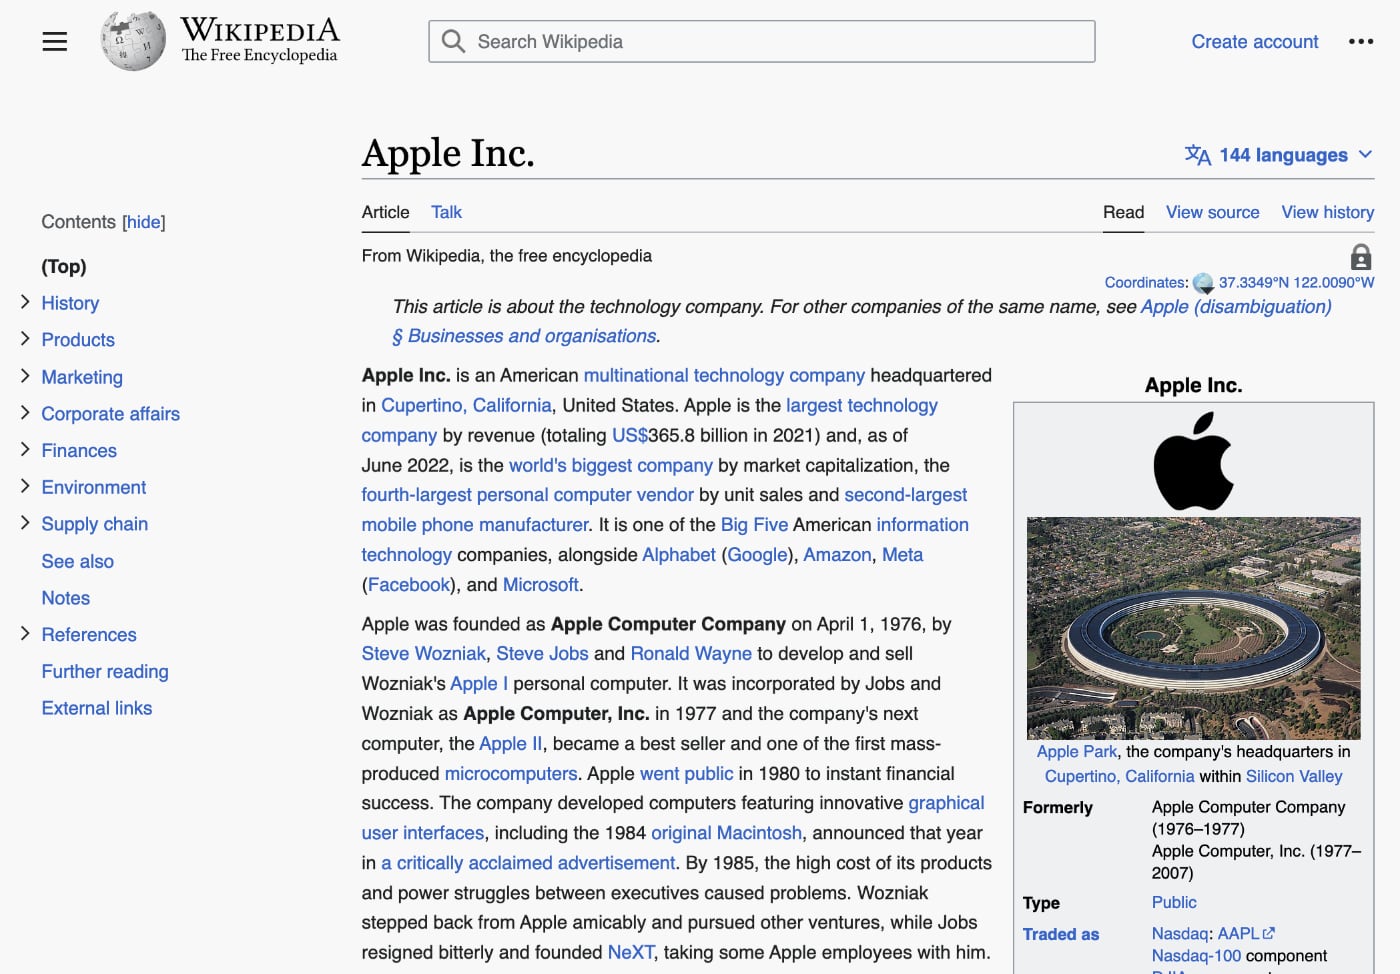 Википедия обновила дизайн впервые за 10 лет. Но все изменения можно заметить с трудом